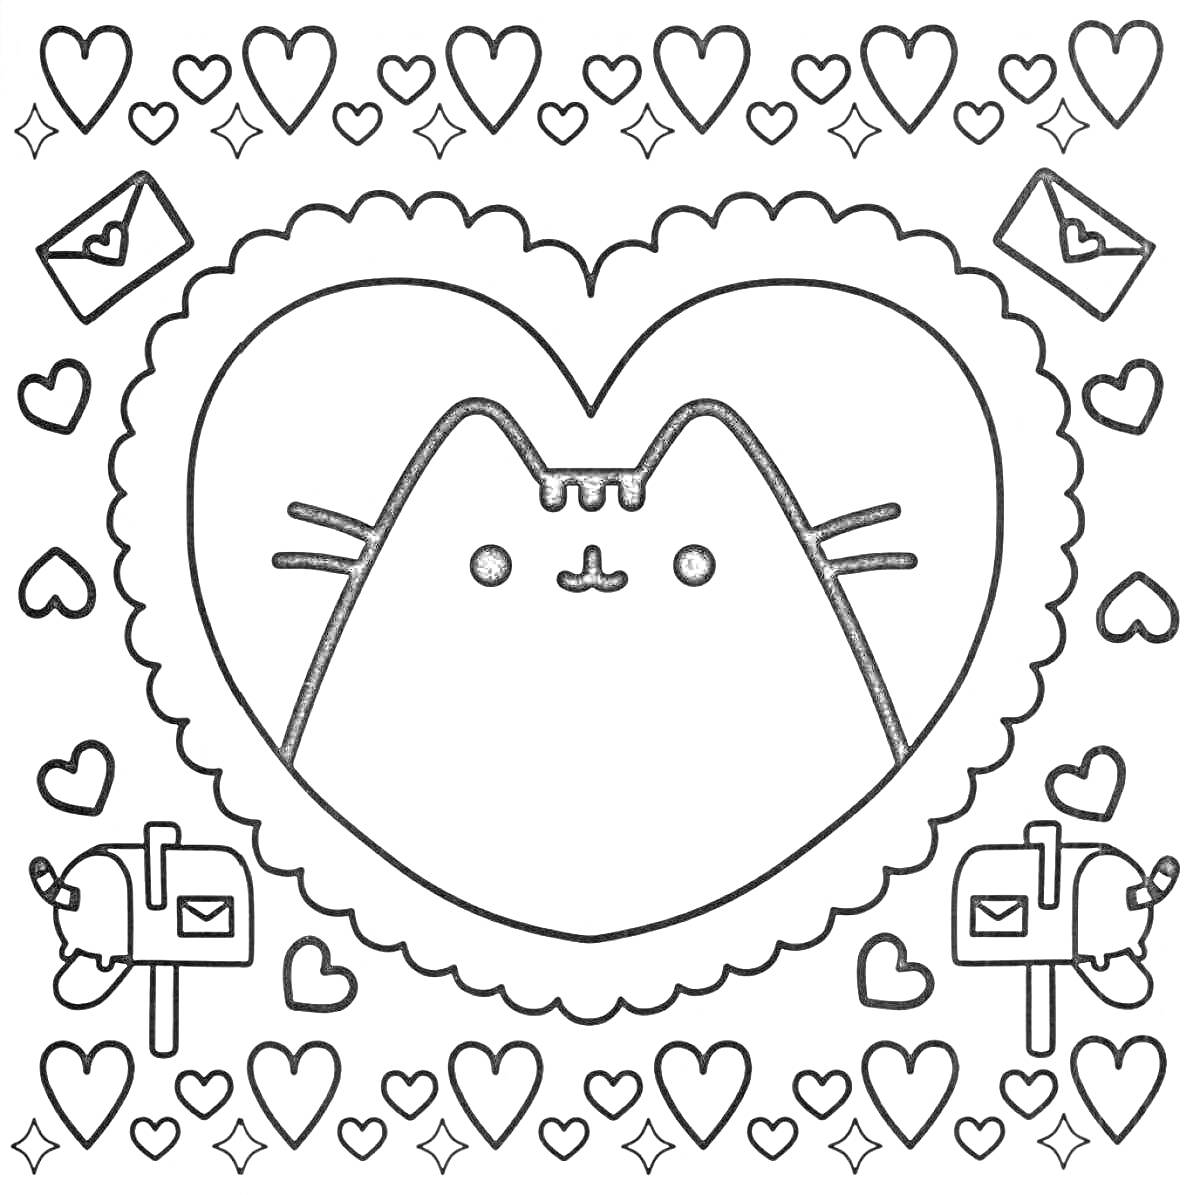 Раскраска Картон Кэт в сердце с конвертами, почтовыми ящиками и сердечками